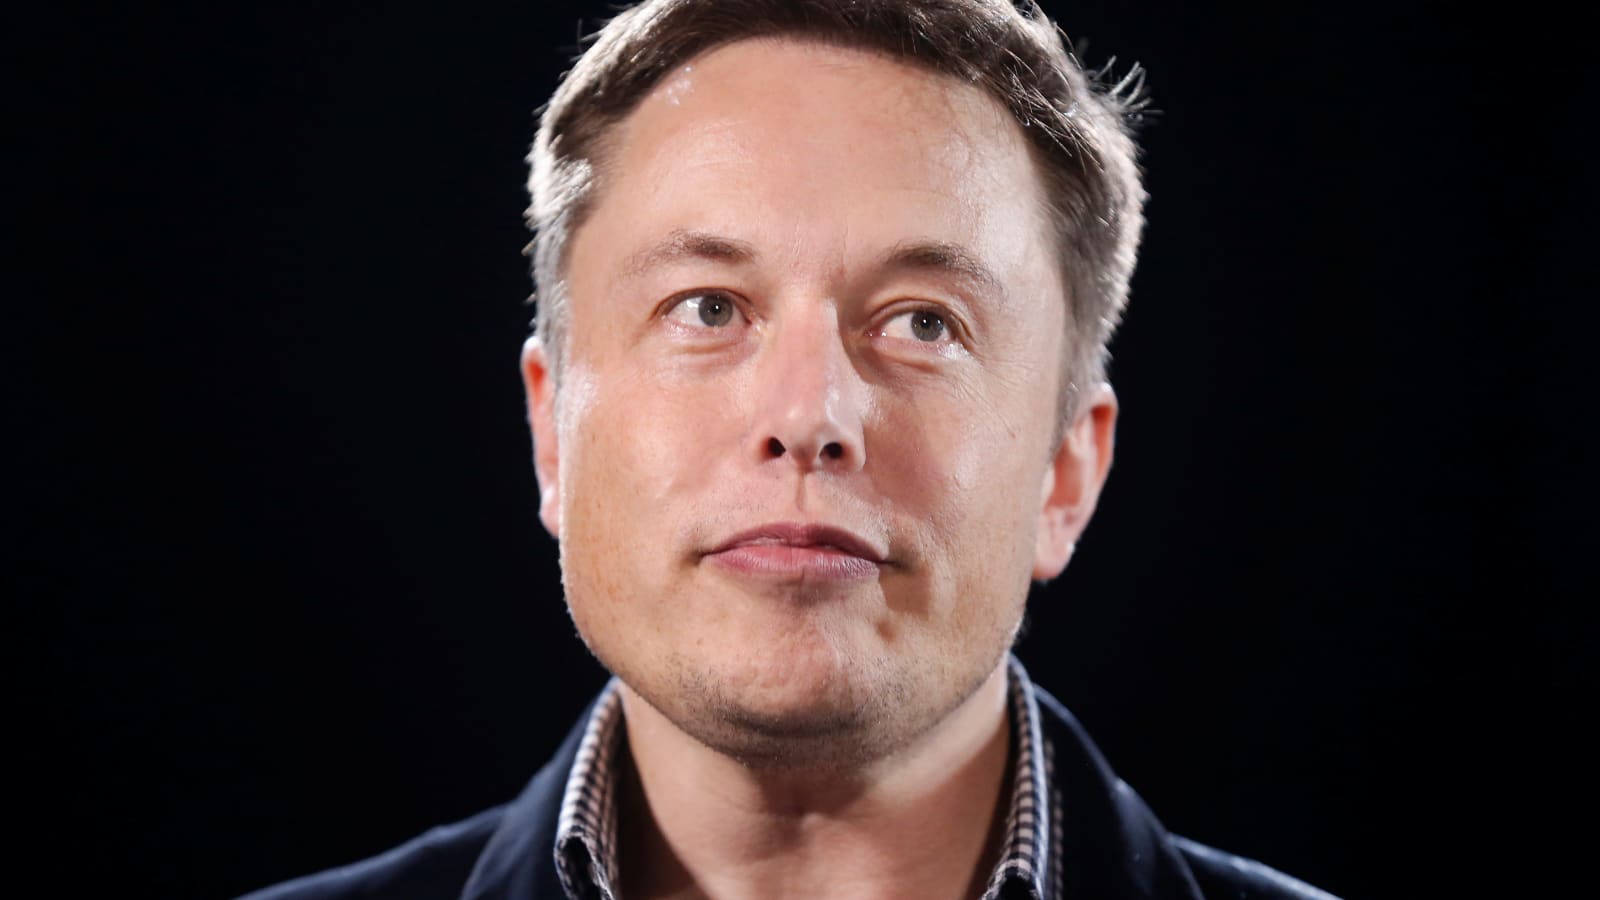 L’ultima di Elon Musk: Tesla investe 1,5 miliardi di dollari in Bitcoin. La criptovaluta s’impenna